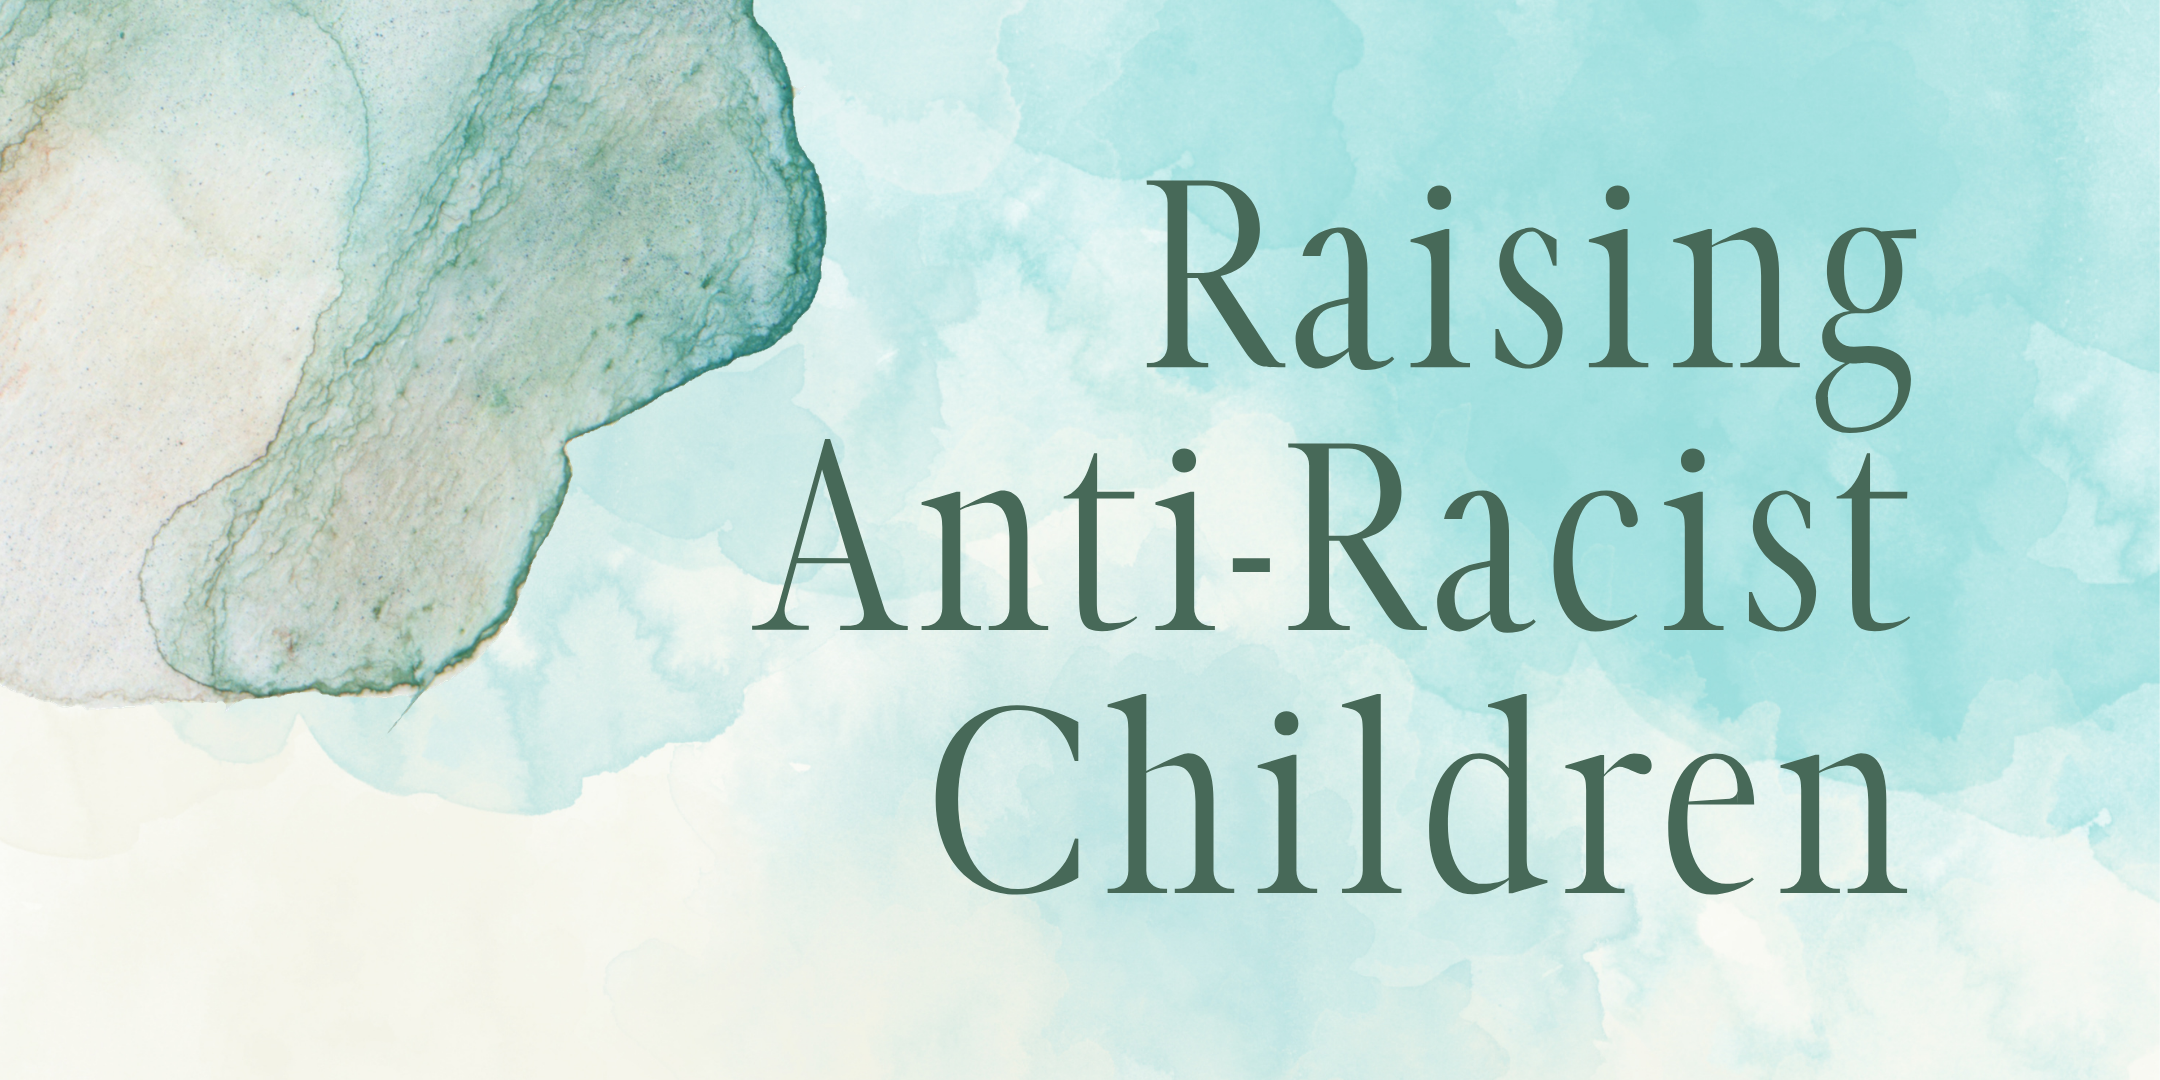 Raising Anti-Racist Children